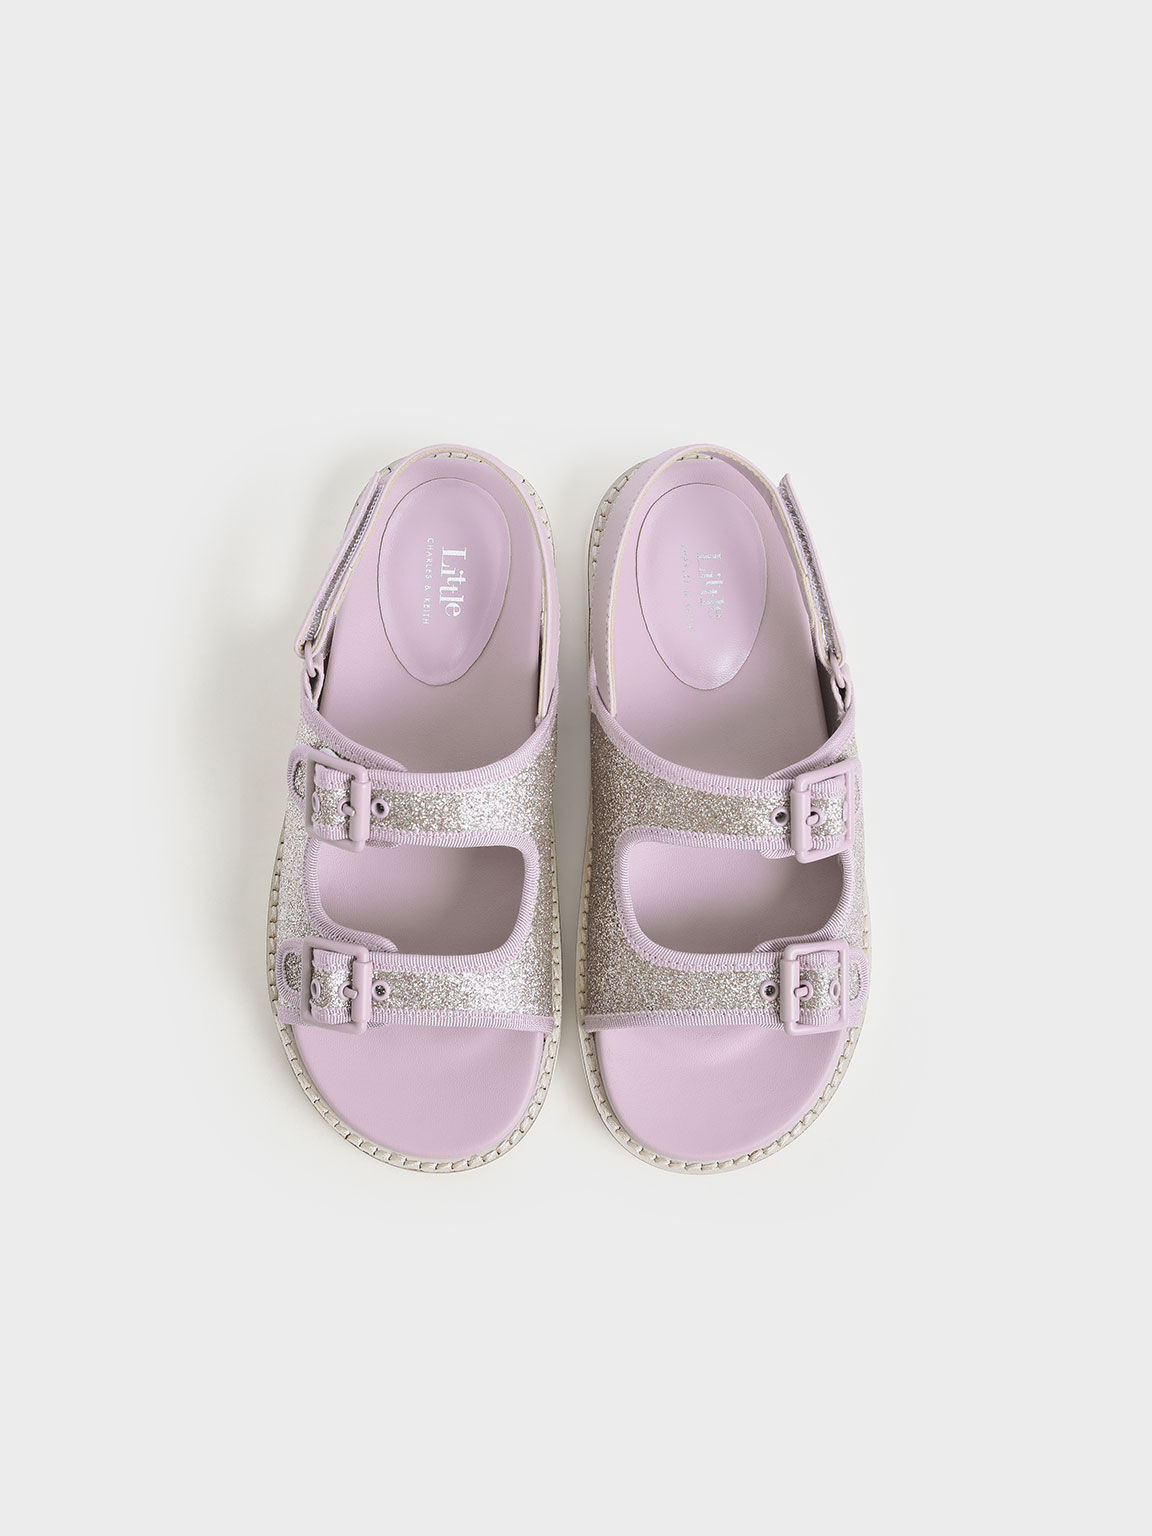 兒童雙帶釦涼鞋, 紫丁香色, hi-res